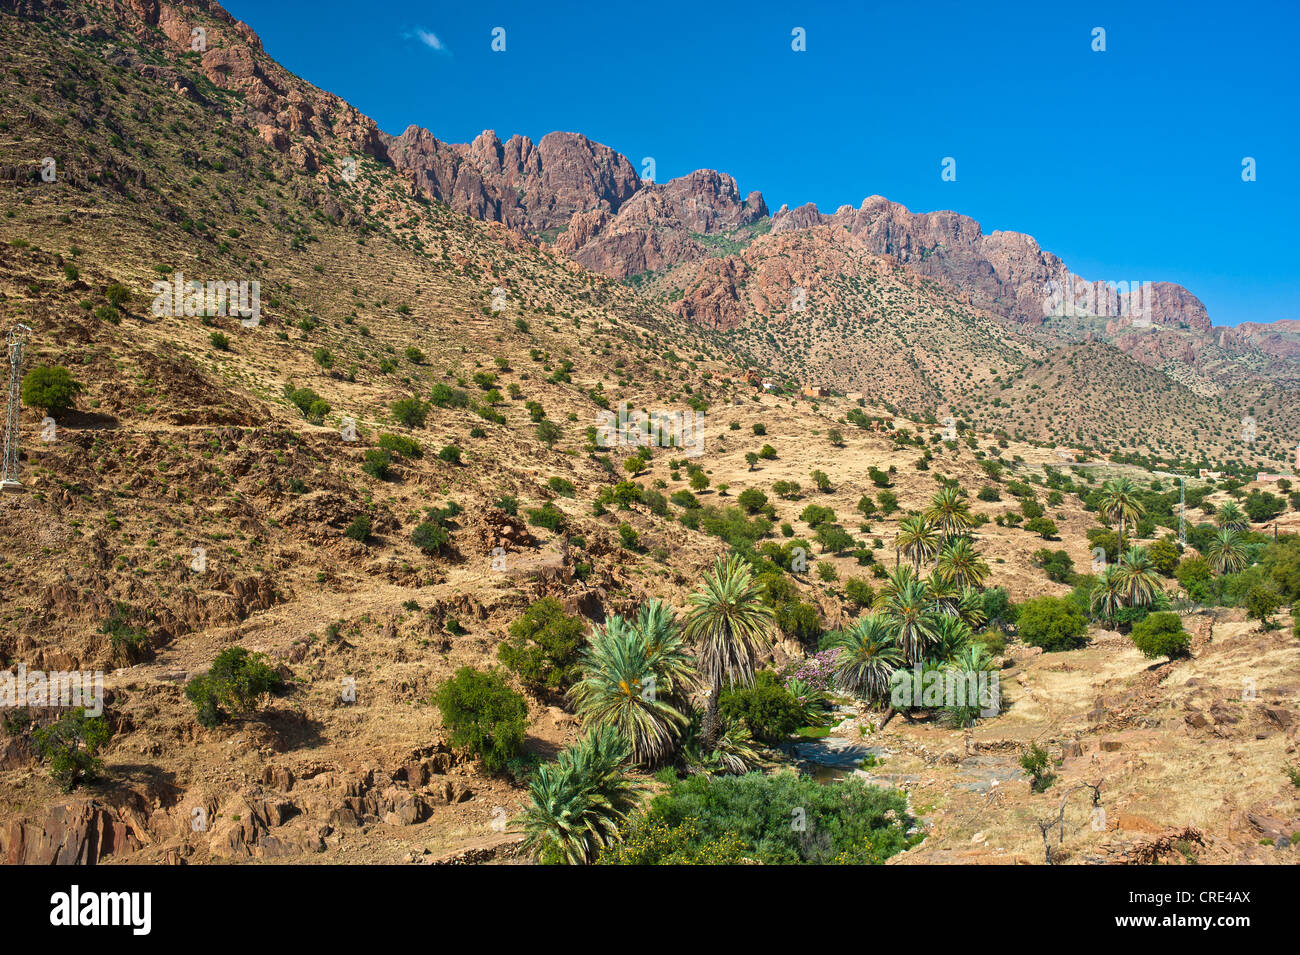 Tipico paesaggio di montagna con un letto asciutto del fiume dove gli alberi di Argan (Argania spinosa e palme da dattero (Phoenix dactylifera) crescere Foto Stock